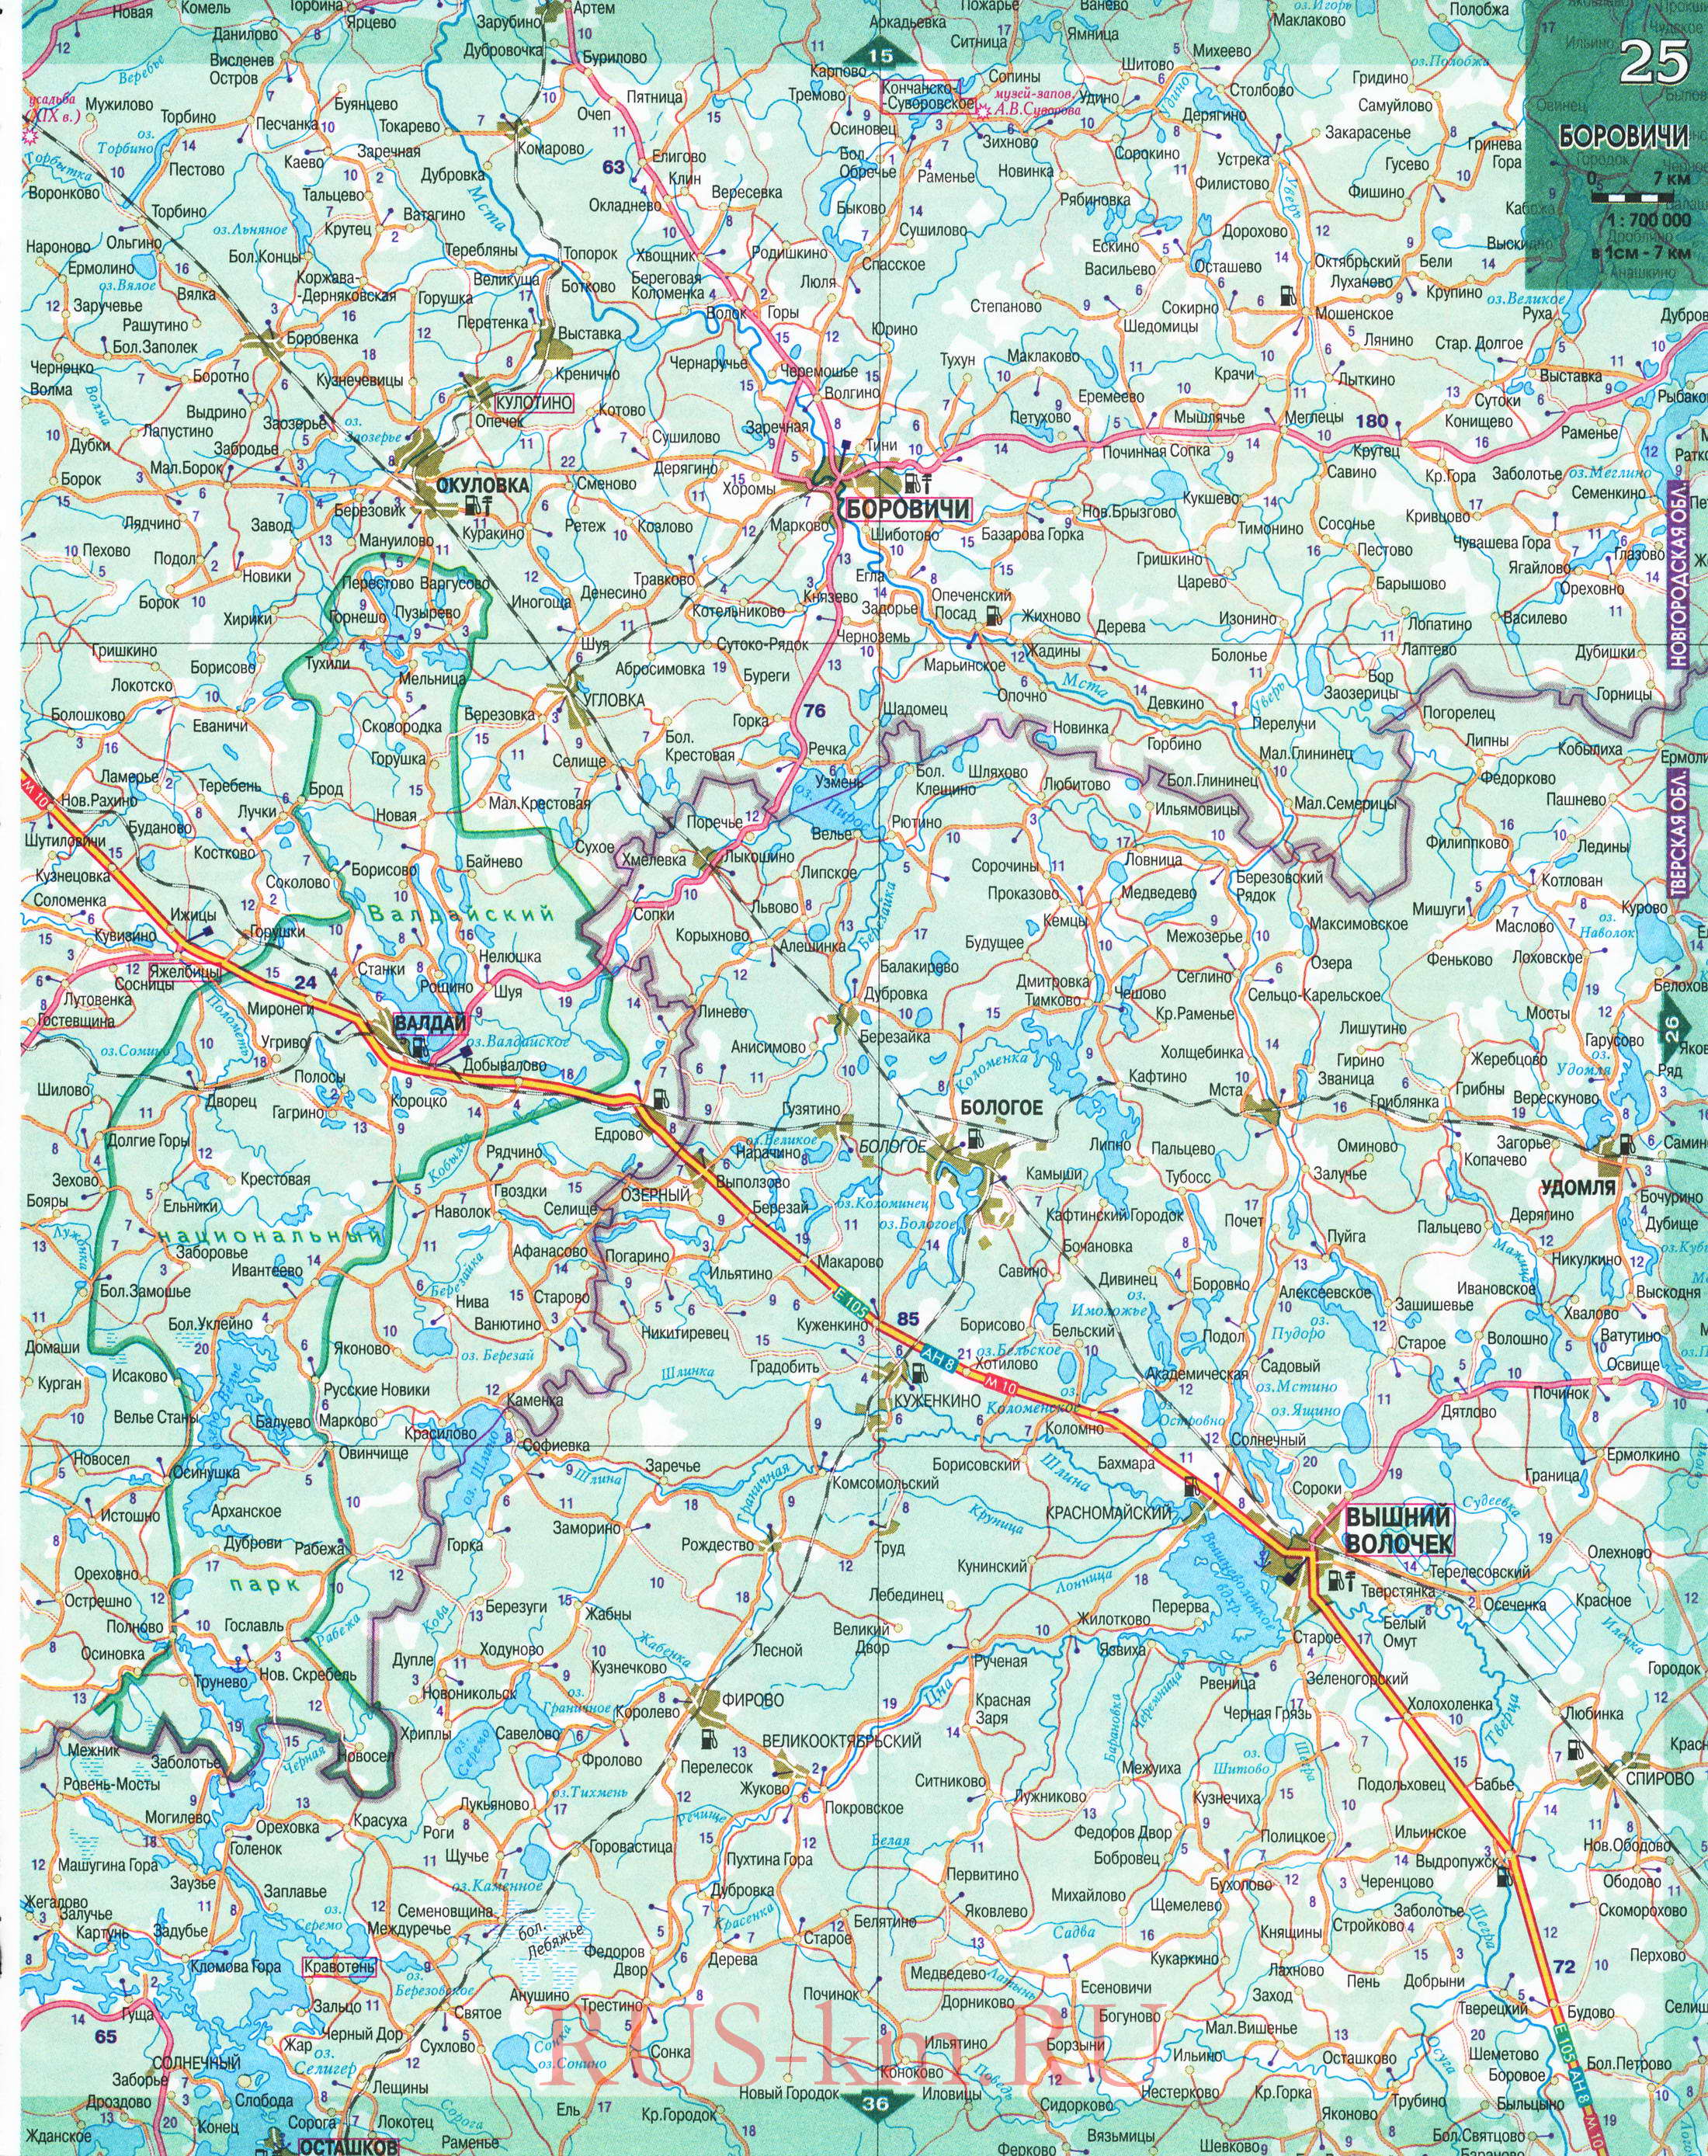 Карта Вологодской области автомобильная. Большая подробная карта дорог Вологодской области масштаба 1см:7км, A1 - 